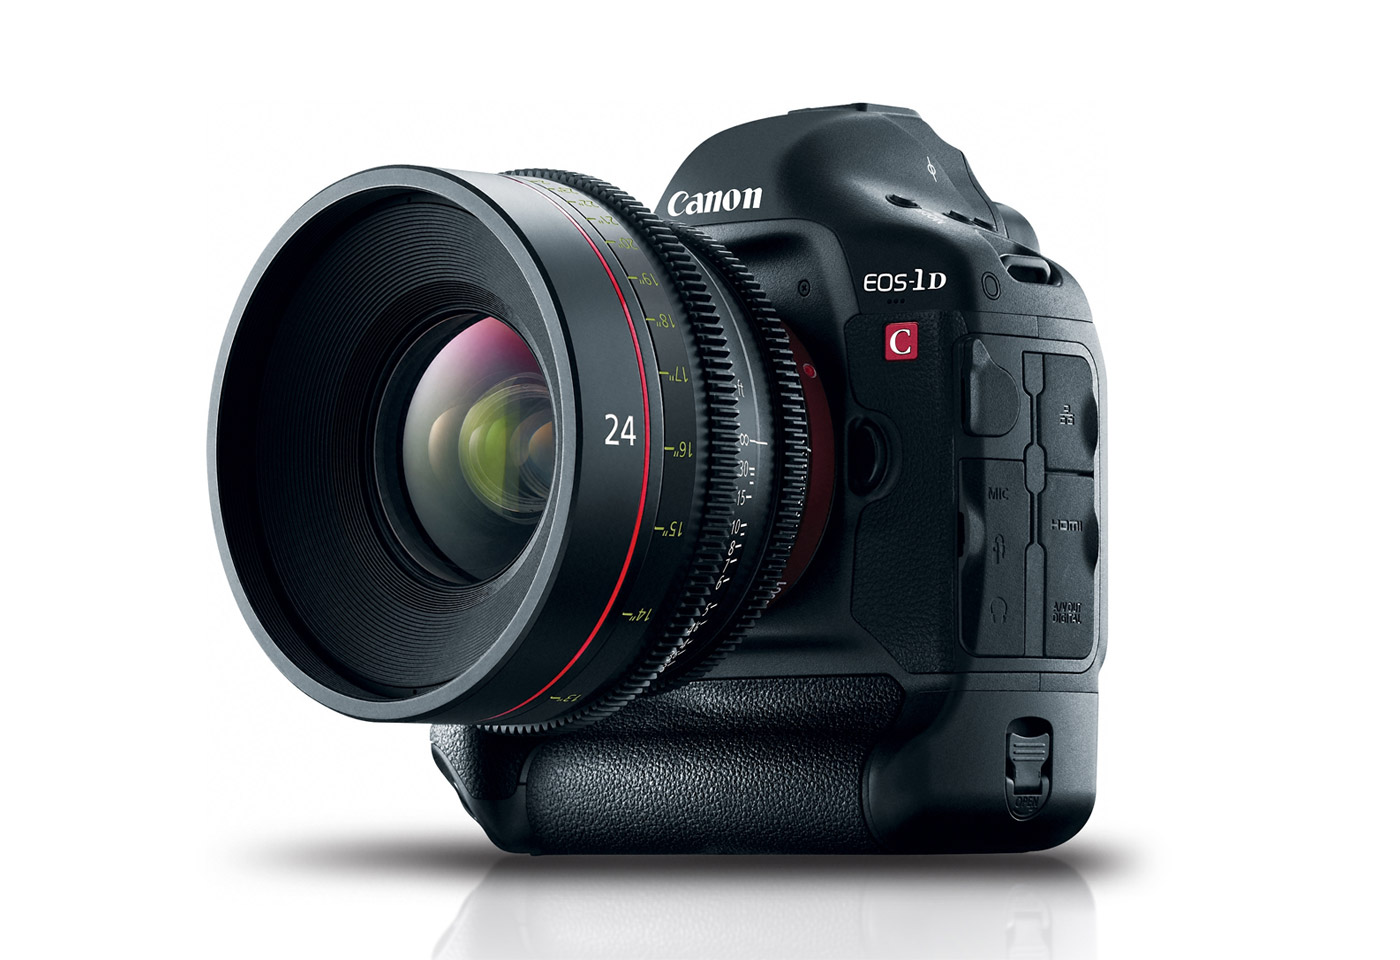 Canon CN-R 20mm T1.5 L F Cinema Prime Lens (Canon RF) (13803372526) 